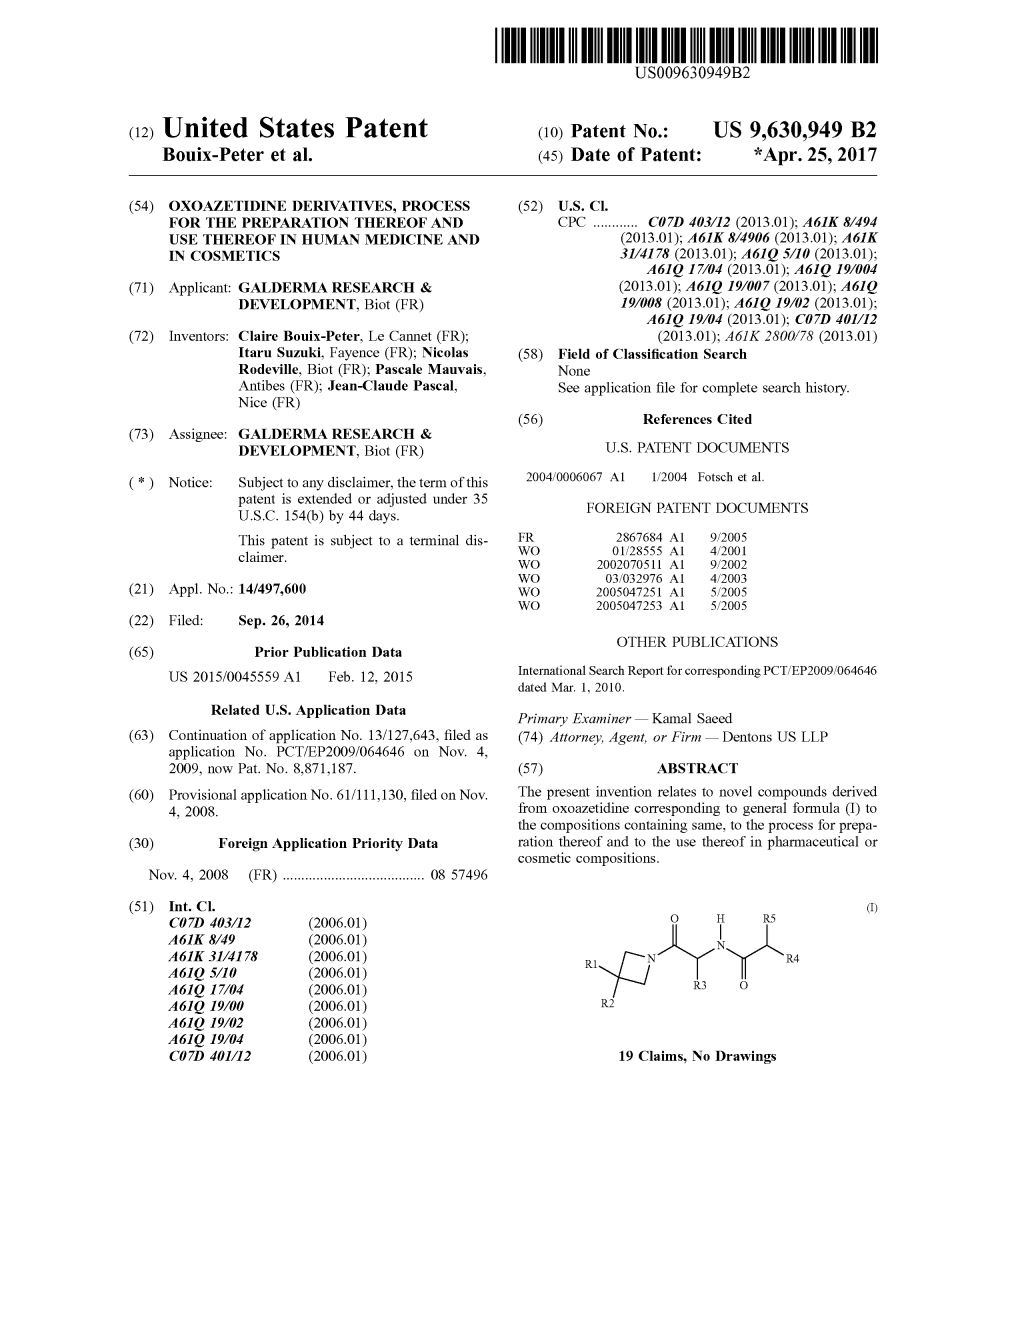 (12) United States Patent (10) Patent No.: US 9,630,949 B2 Bouix-Peter Et Al